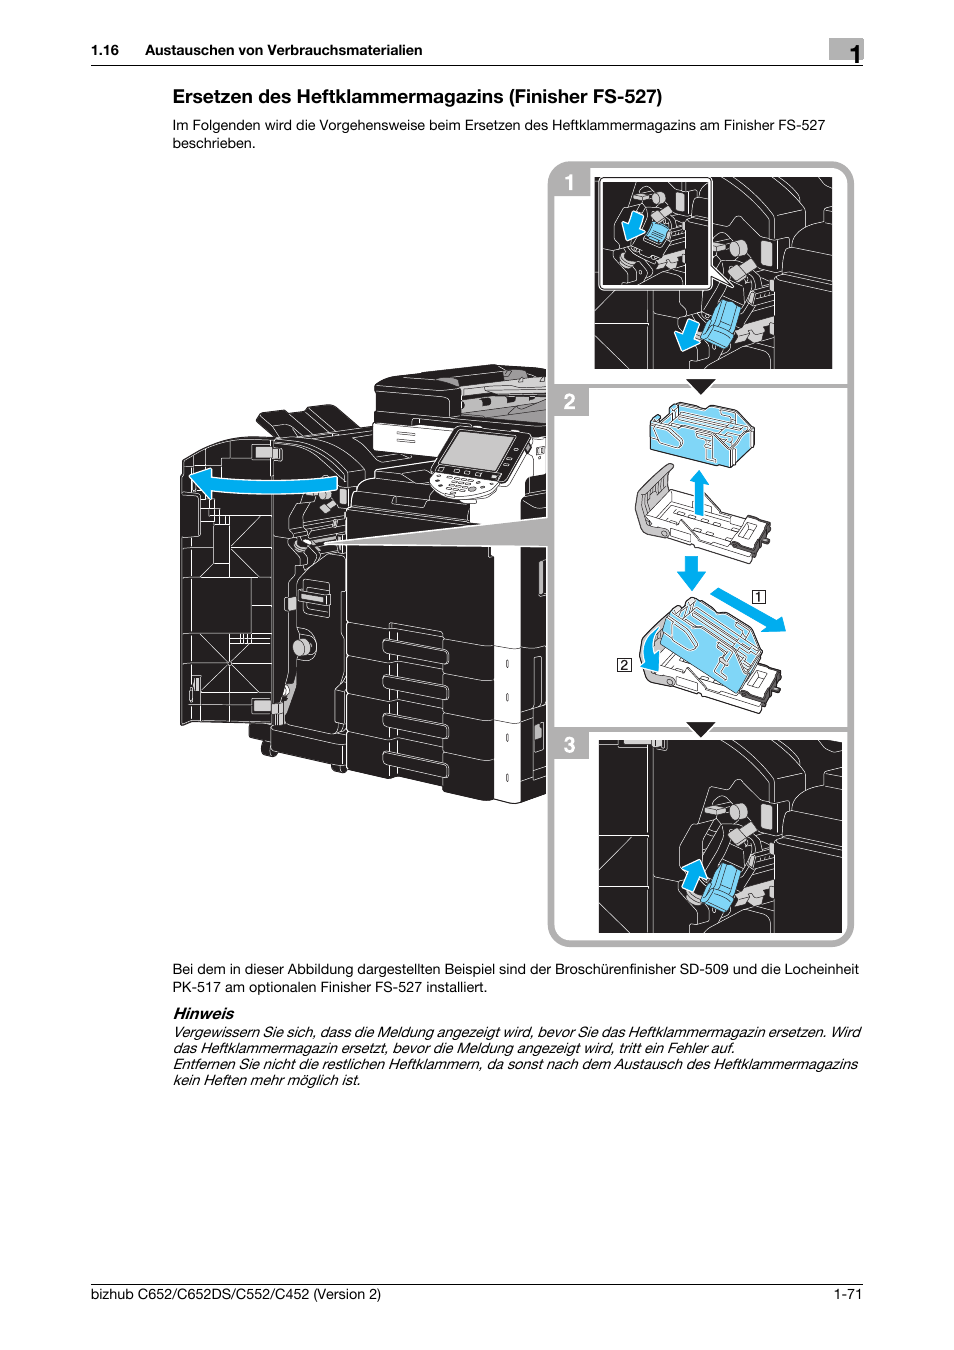 Ersetzen des heftklammermagazins (finisher fs-527), F seite 1-71 | Konica Minolta BIZHUB C652DS User Manual | Page 95 / 338